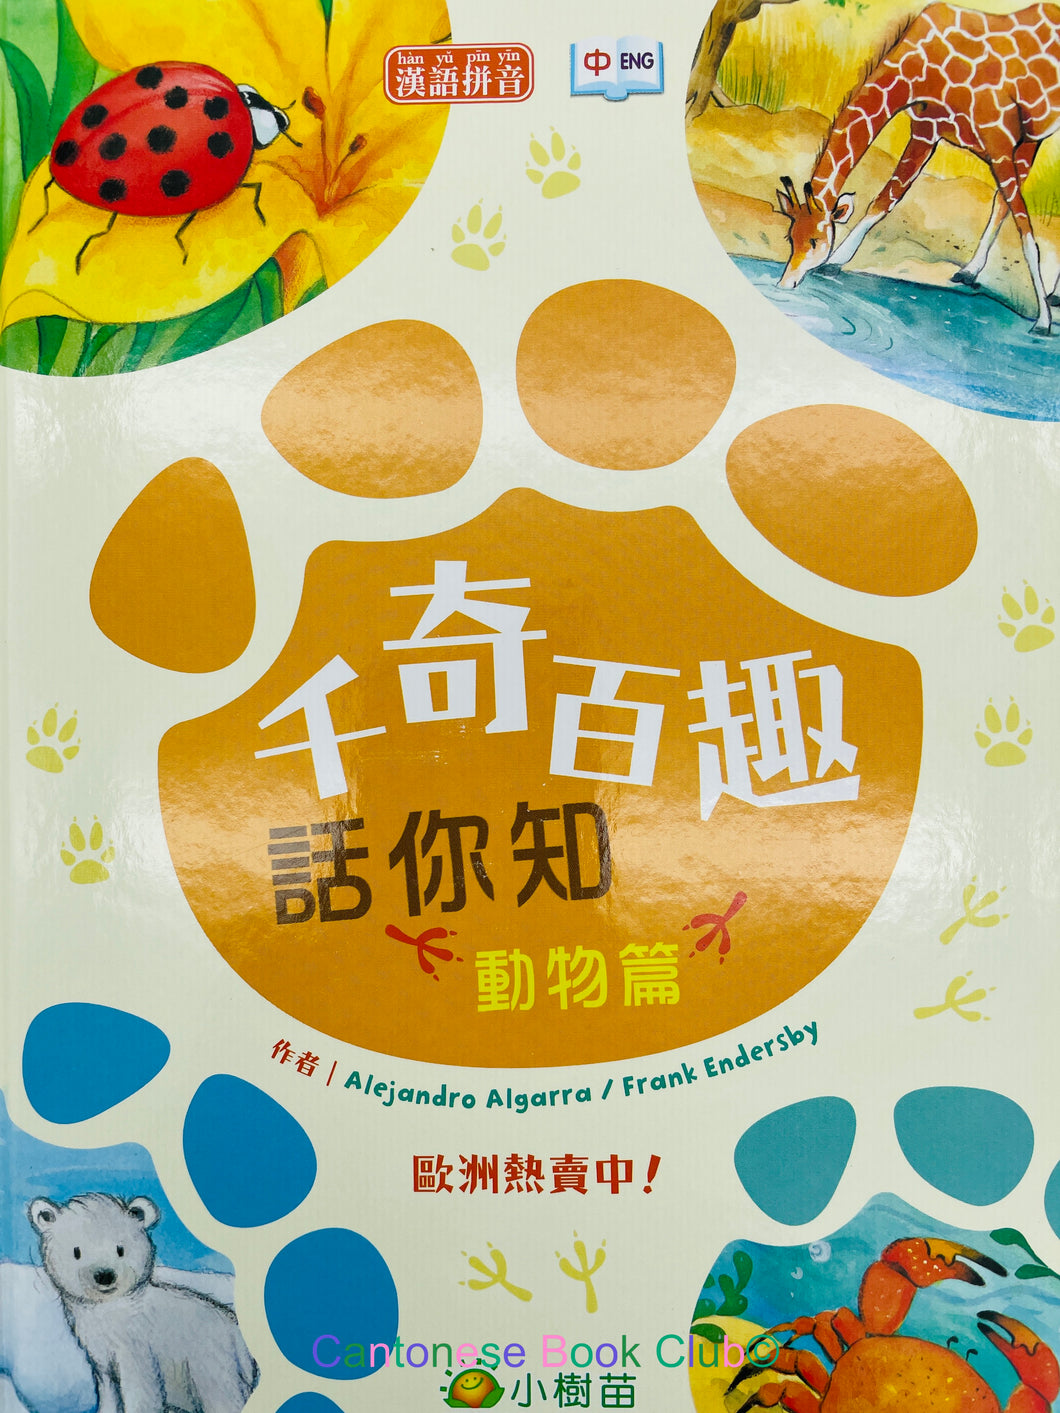 千奇百趣話你知 : 動物篇 (附漢語拼音/中英對照) Thousands of Wonders and Hundreds of Interests You Know: Animals (with Pinyin/Chinese-English bilingual)